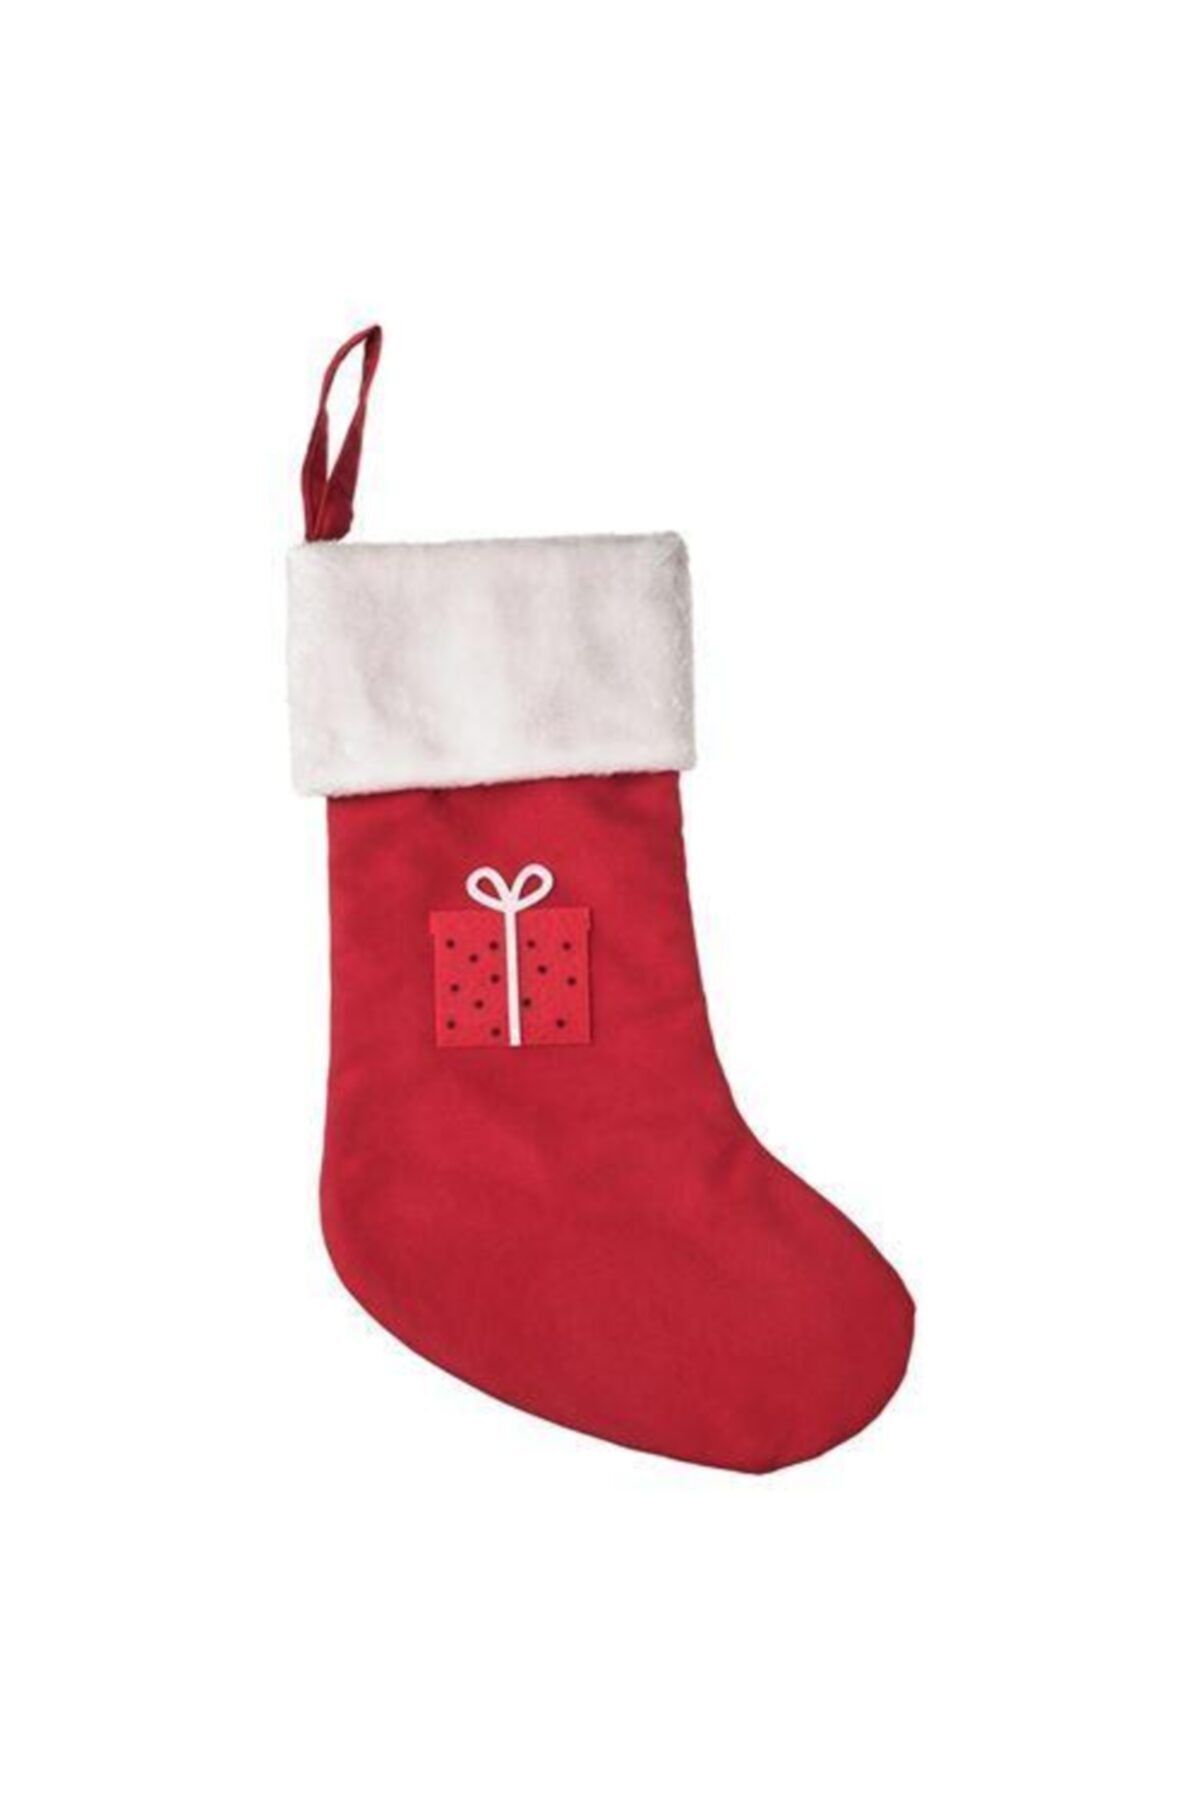 IKEA Vınter 2021 Noel Çorabı, Kırmızı